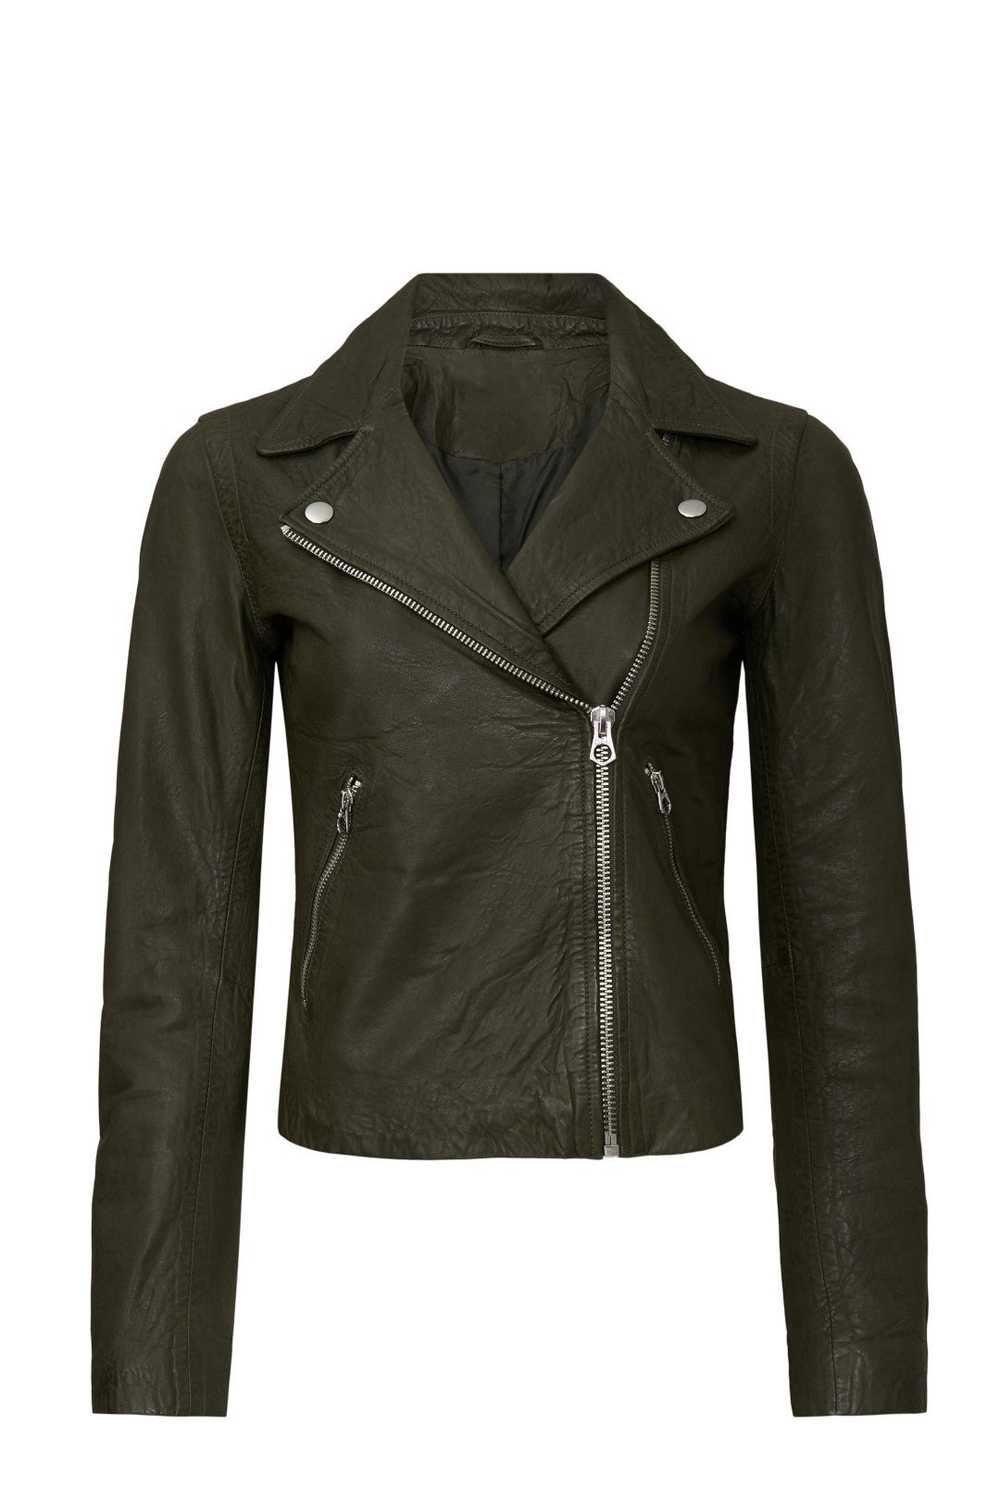 Madewell Washed Leather Moto Jacket - image 5